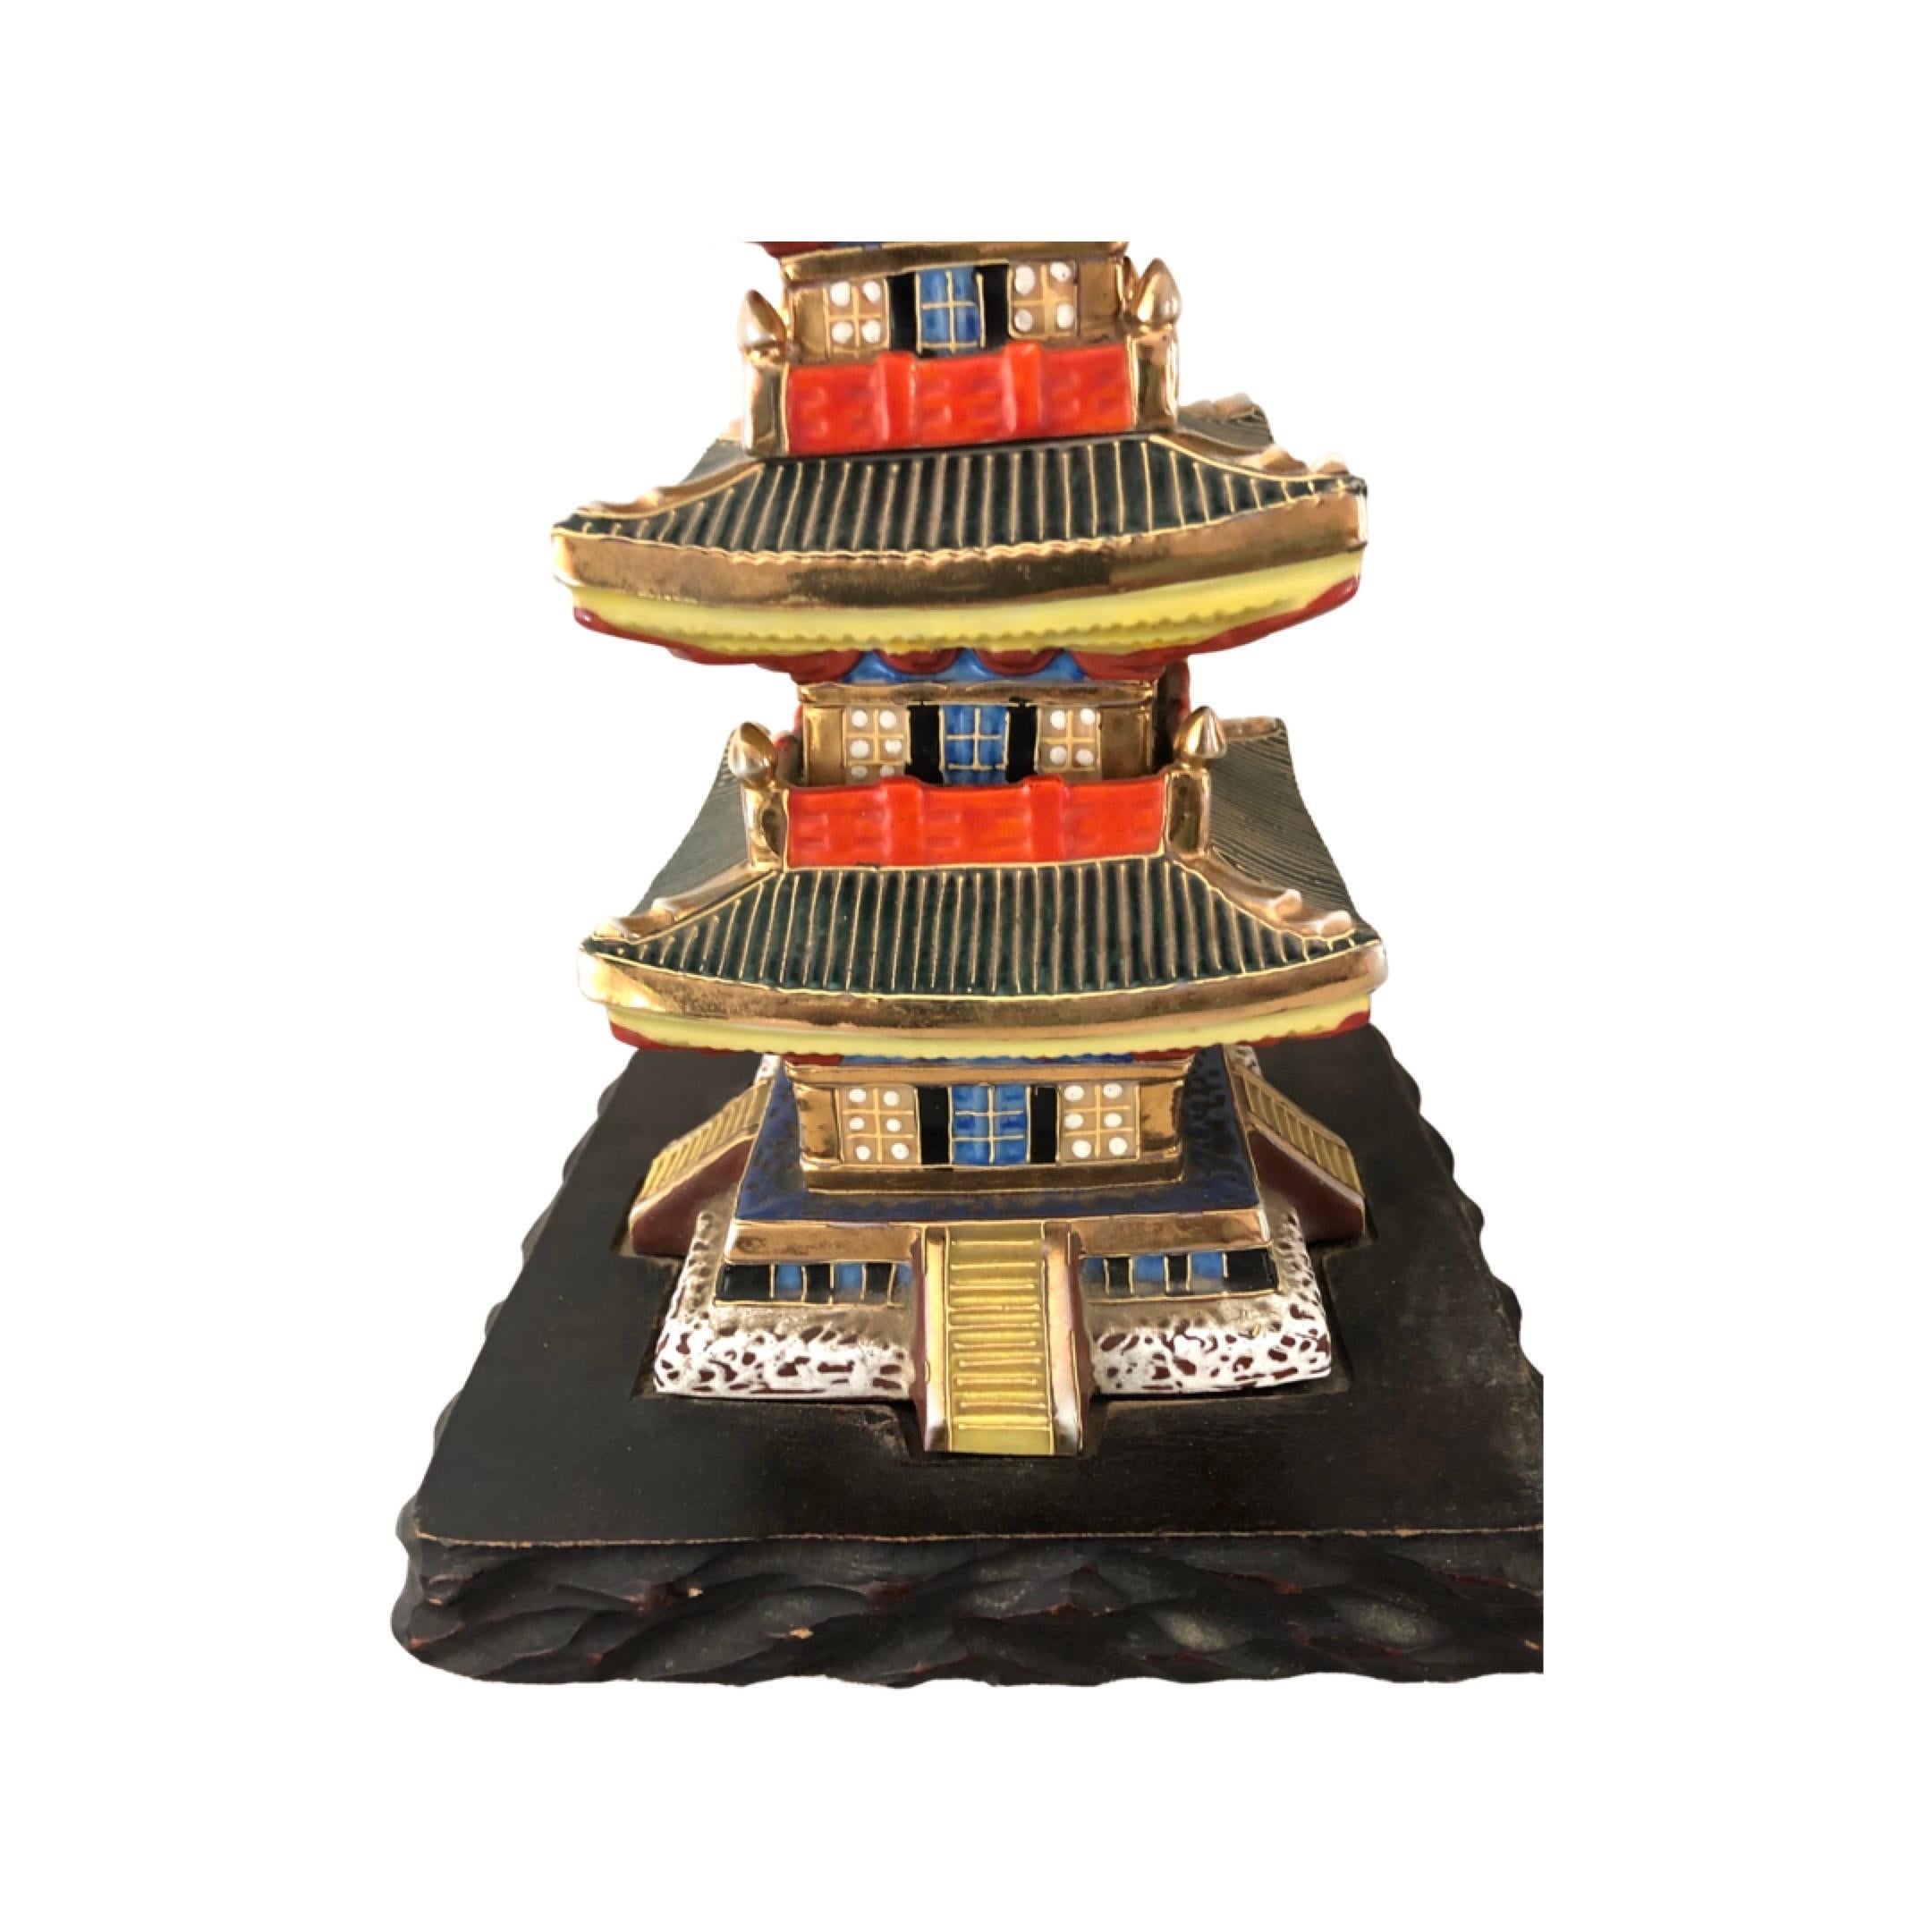 Rare paire de lampes japonaises en porcelaine en forme de pagode. Magnifiquement émaillé dans des couleurs très vives avec des accents dorés. Les lampes sont montées sur des bases carrées en bois dur sculpté. Câblé et en état de marche. Hauteur à la